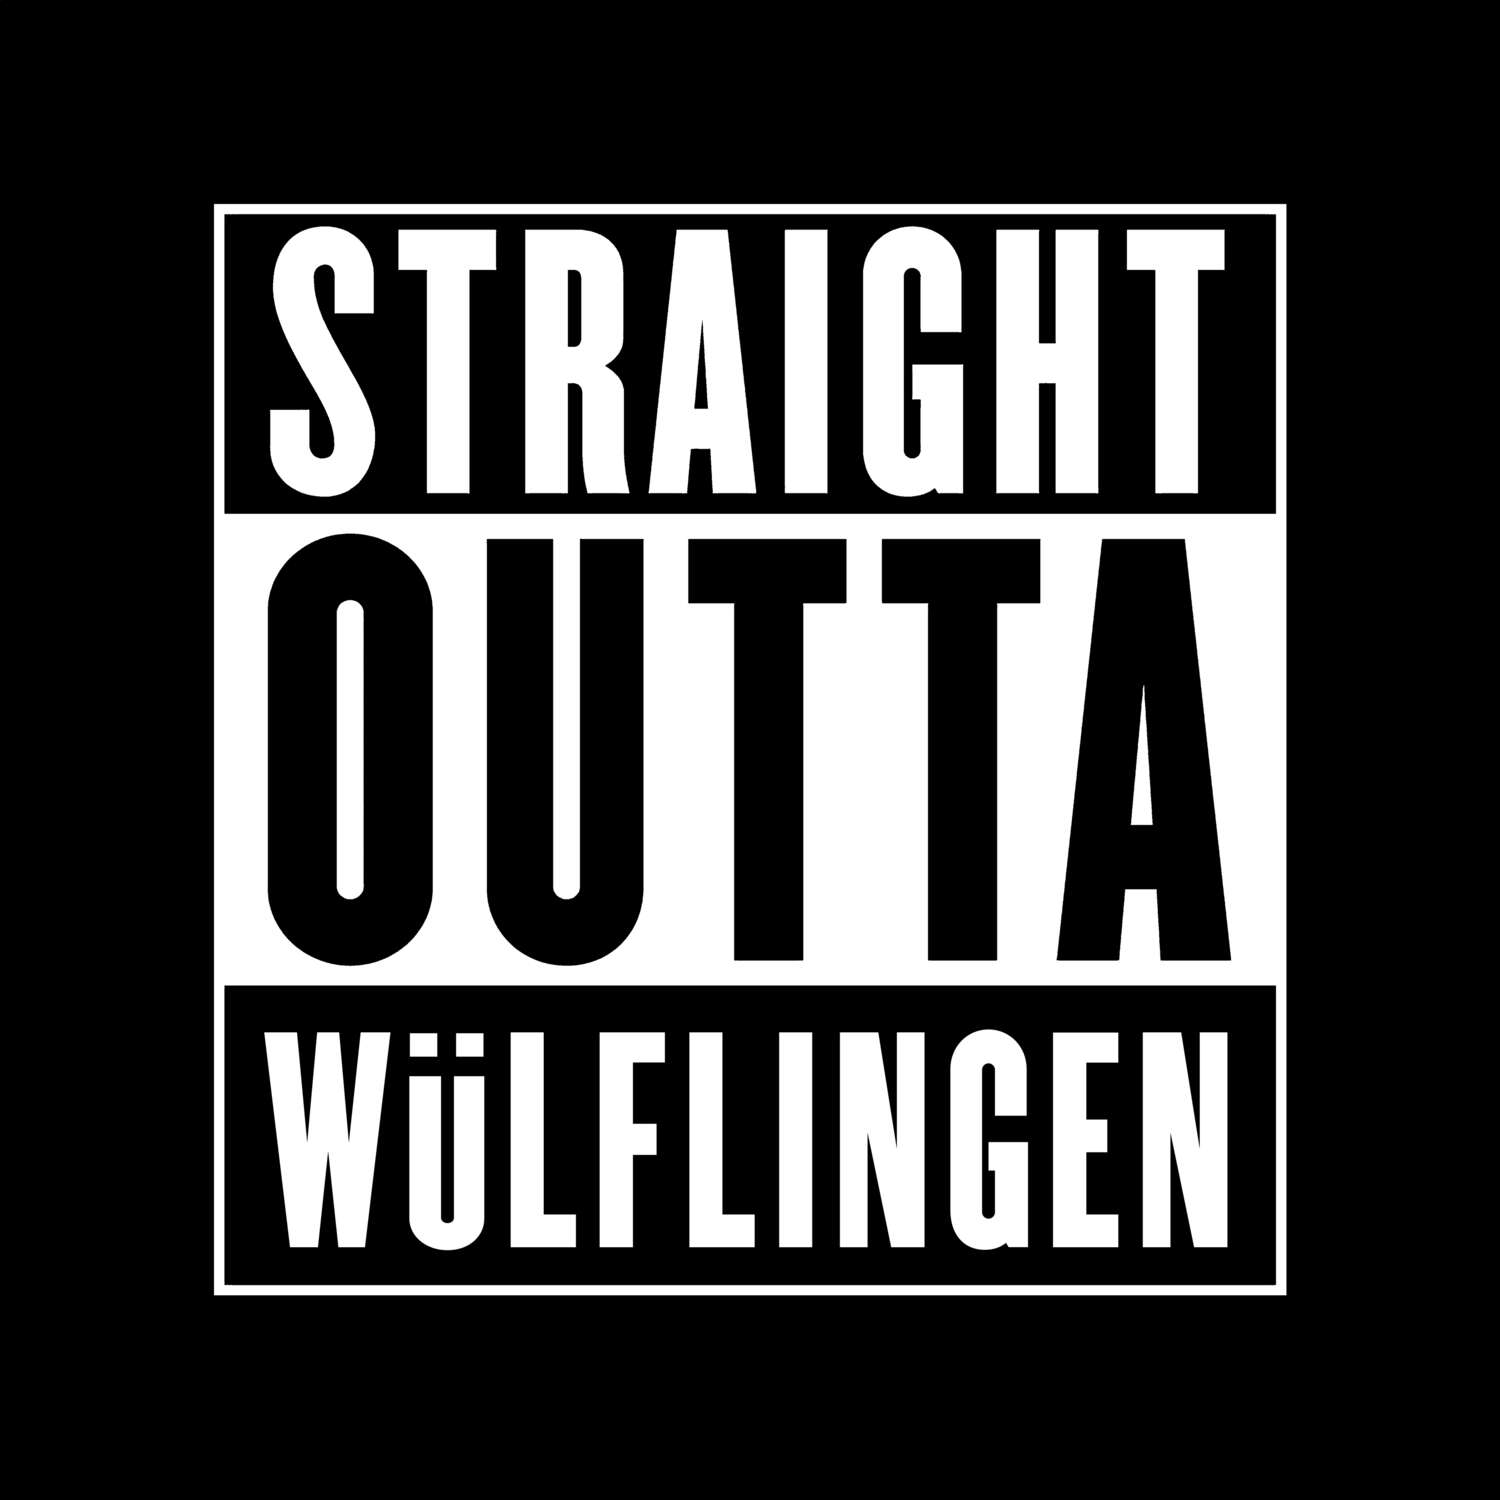 Wülflingen T-Shirt »Straight Outta«